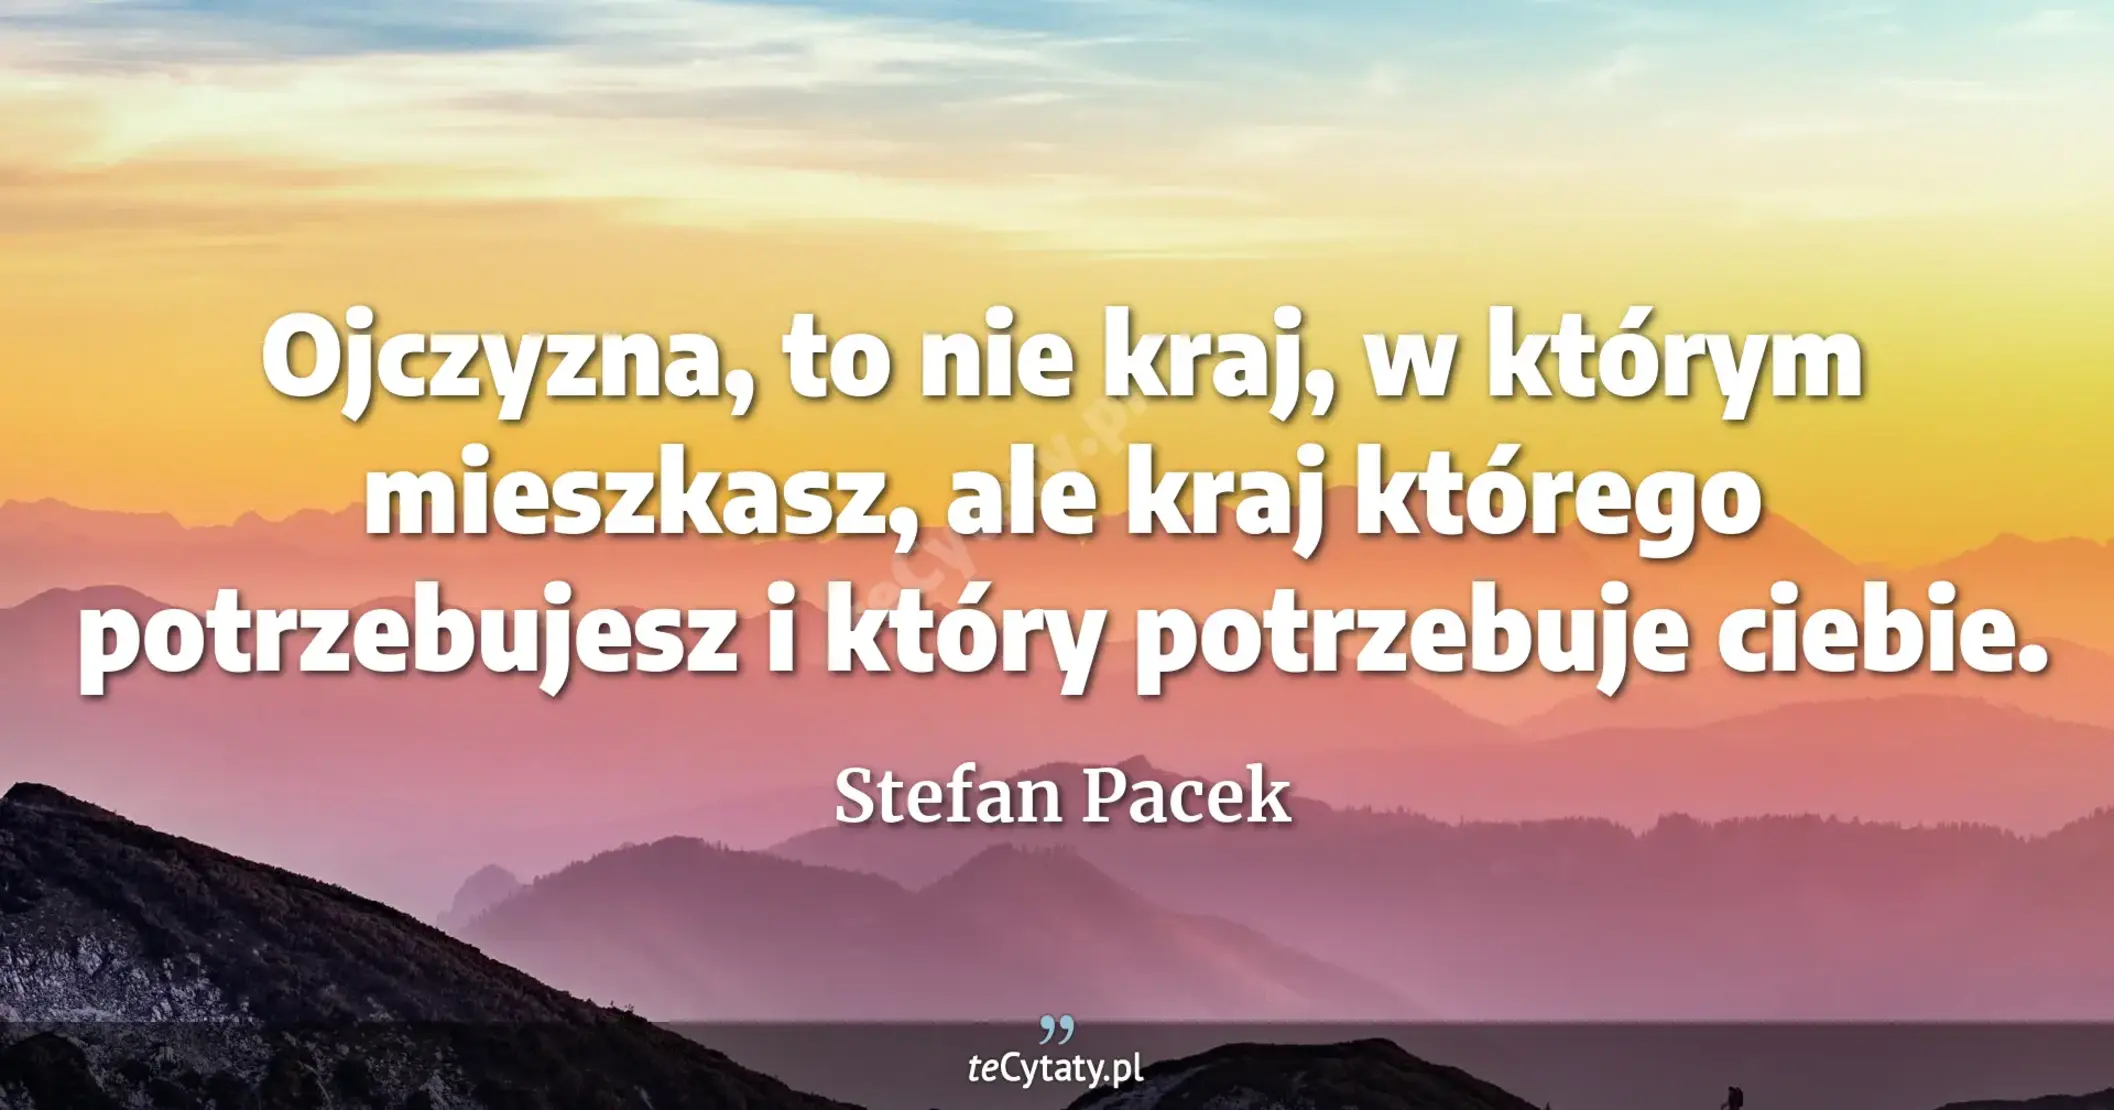 Ojczyzna, to nie kraj, w którym mieszkasz, ale kraj którego potrzebujesz i który potrzebuje ciebie. - Stefan Pacek